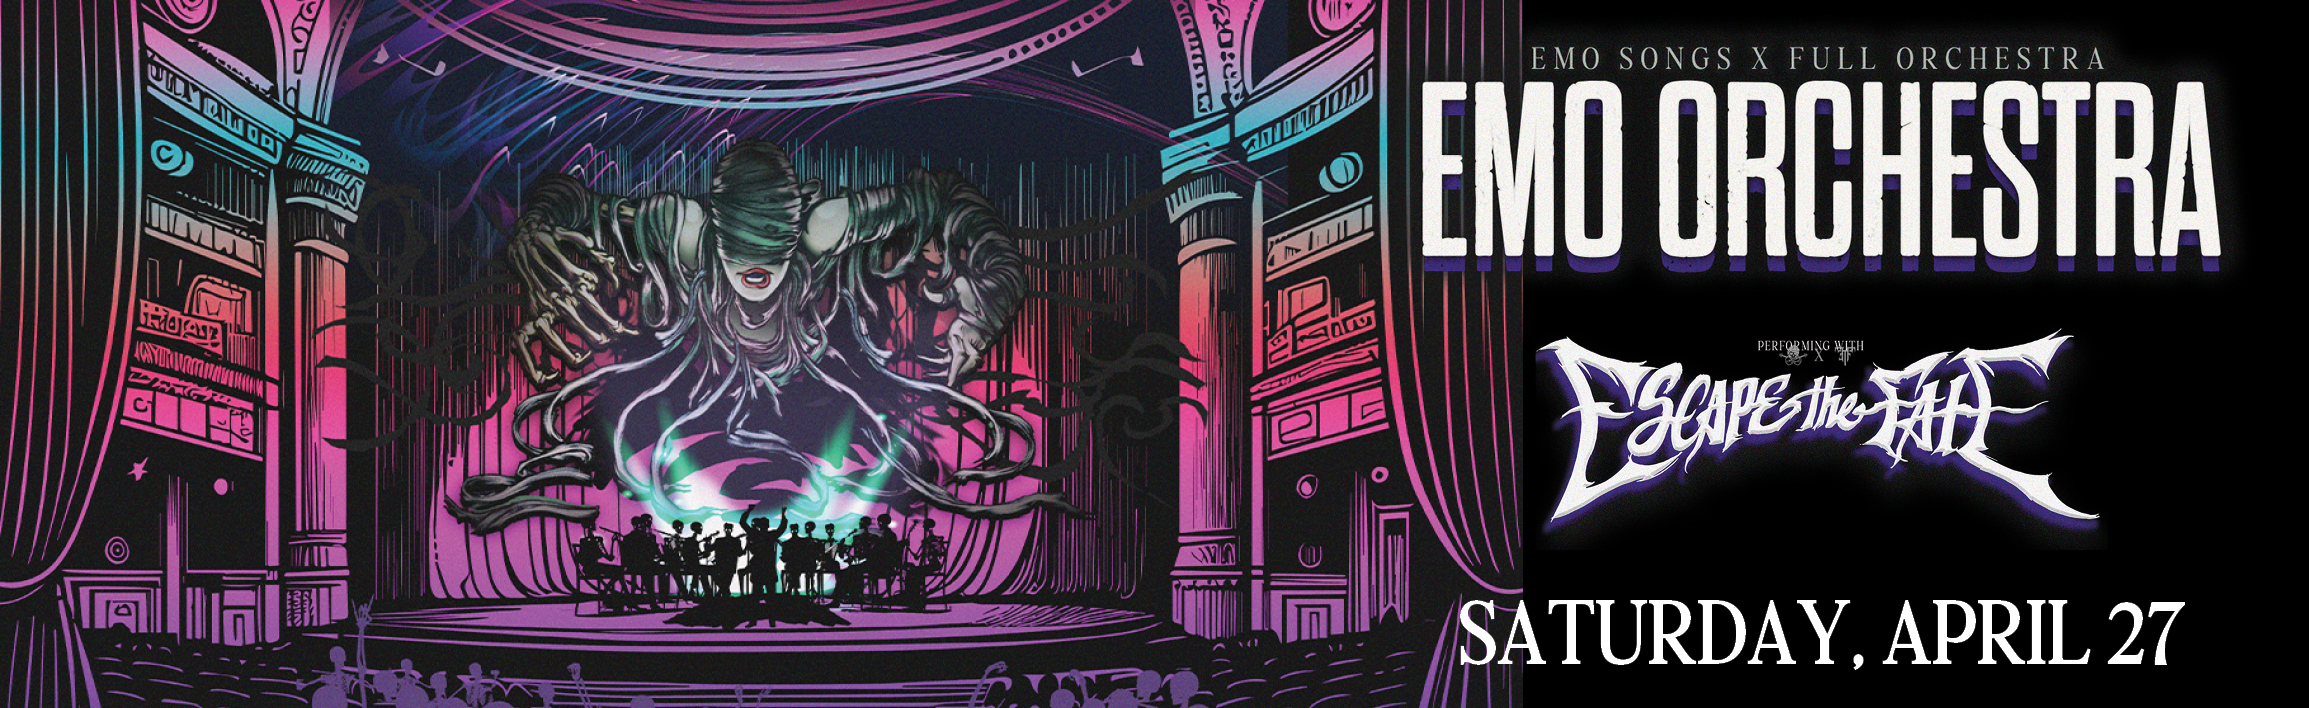 Emo Orchestra featuring Escape The Fate